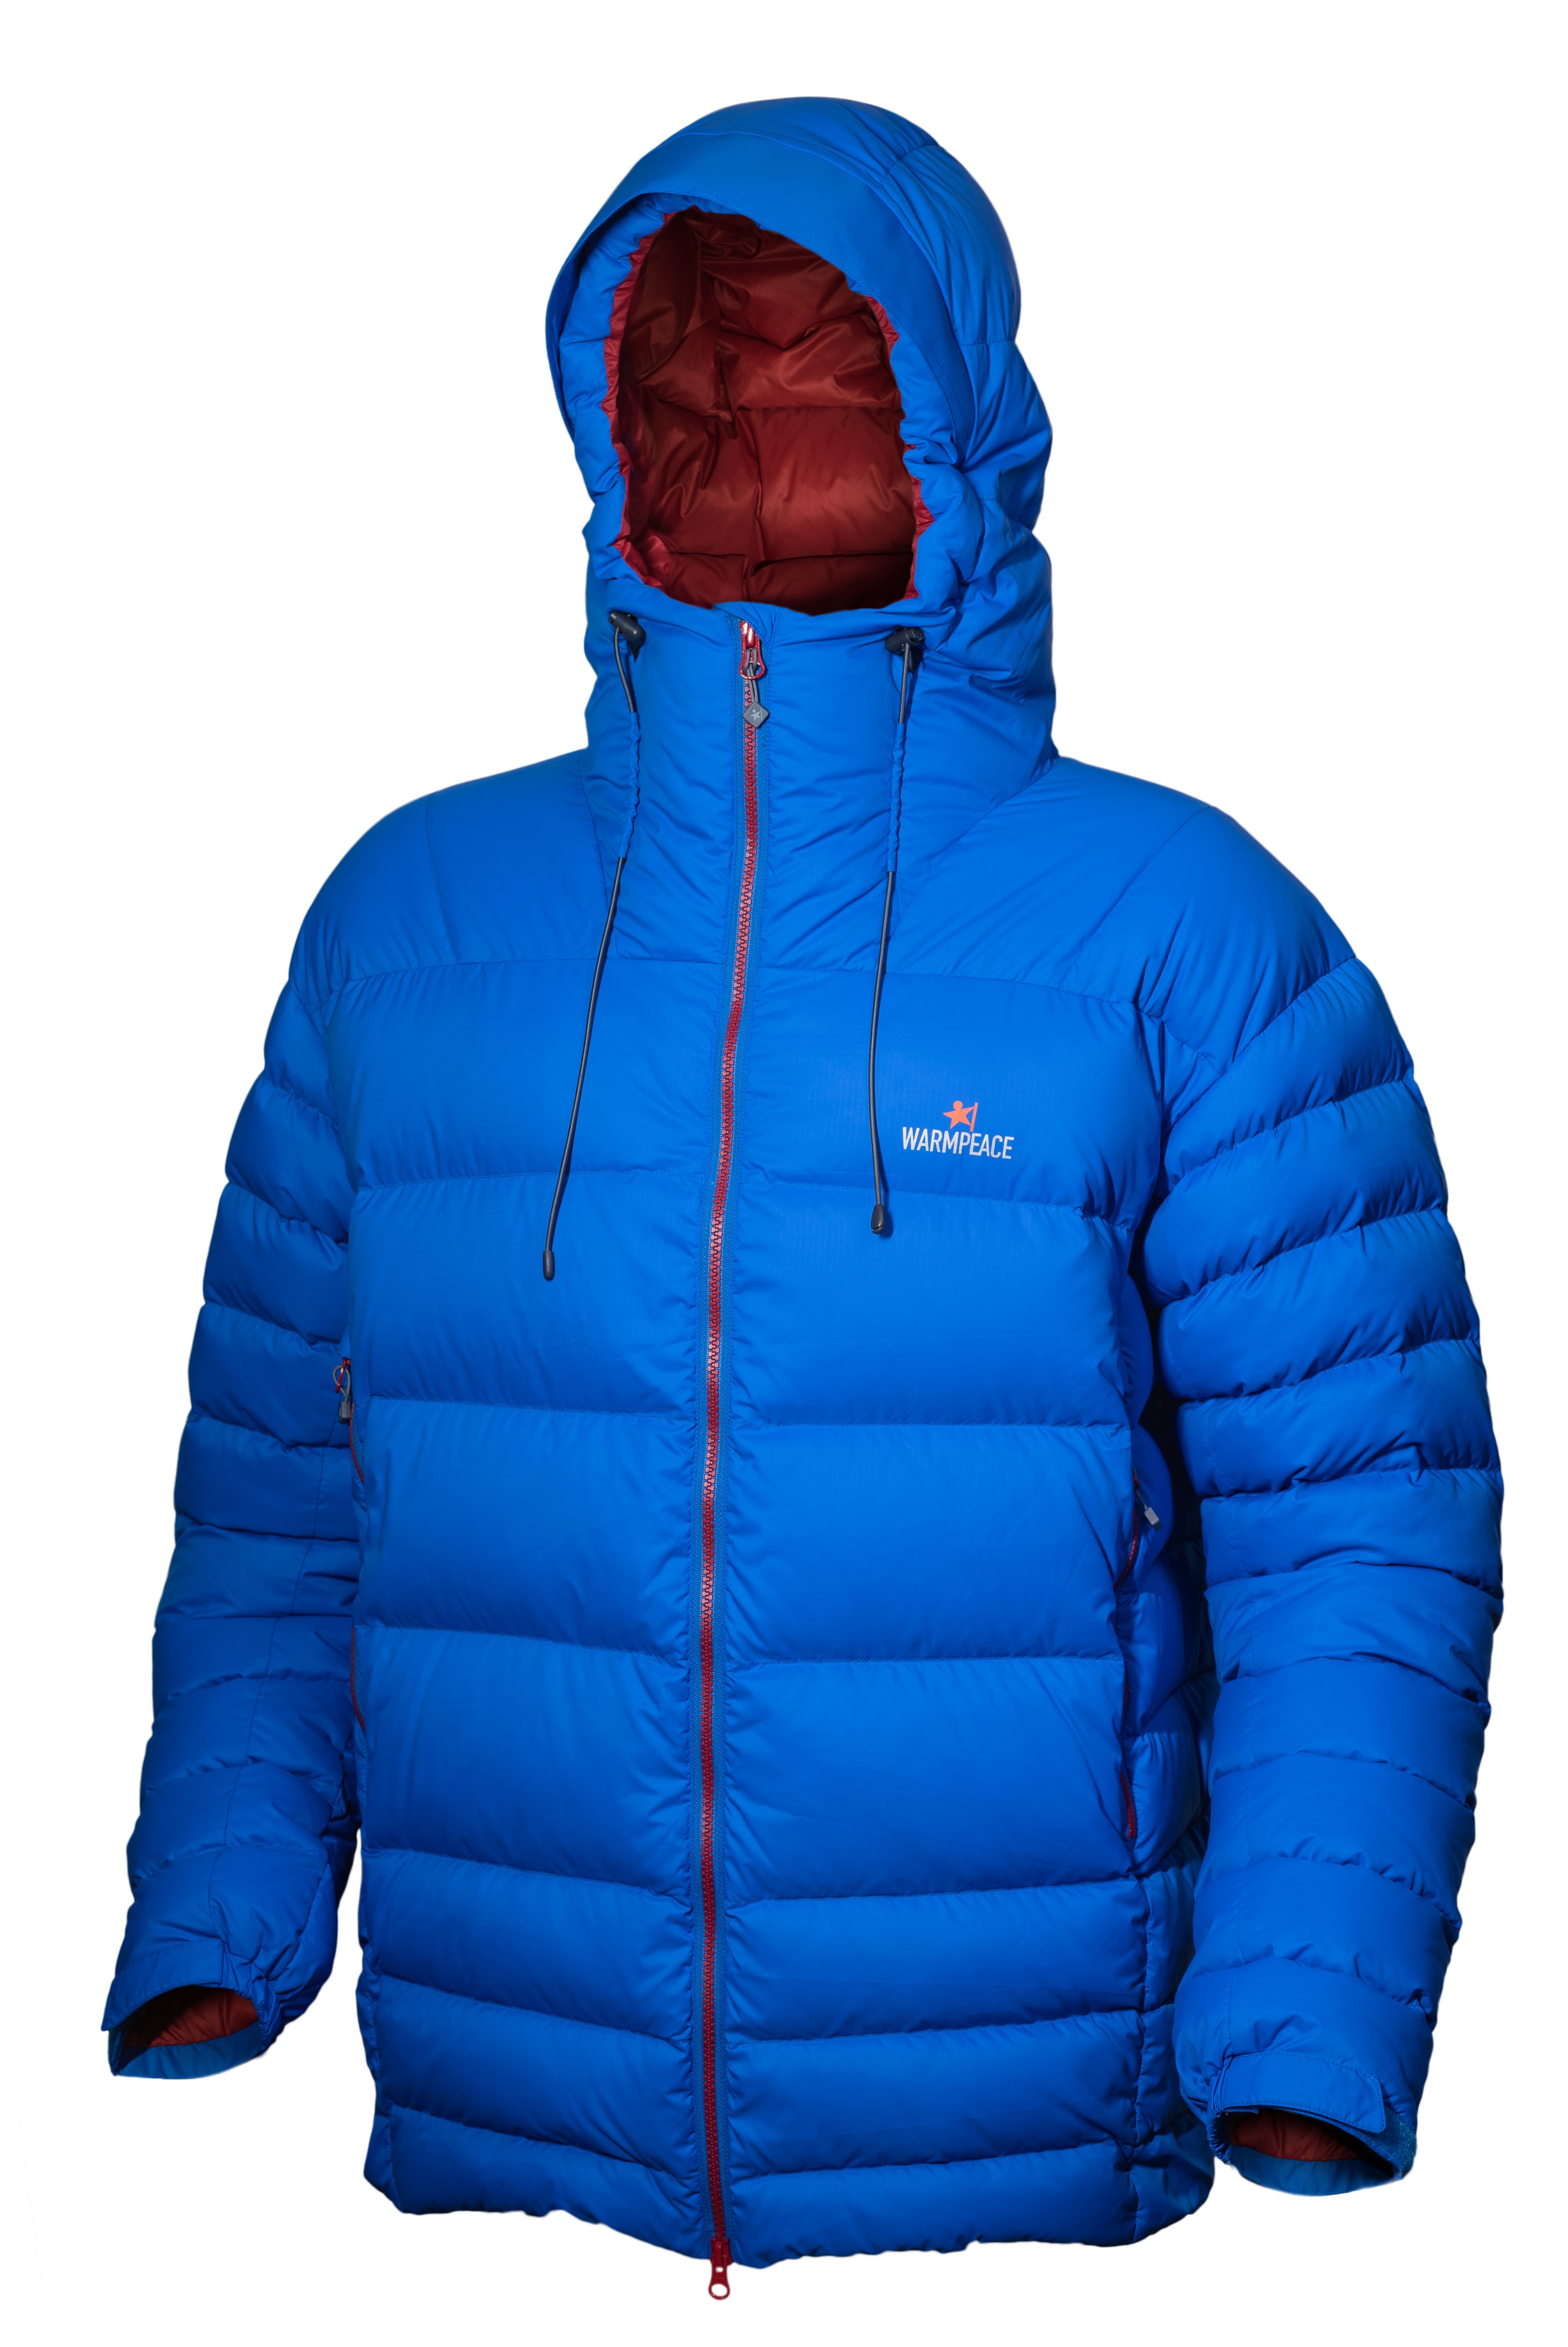 Warmpeace Alaskan Jacket Kjøp på nett - Hekta På